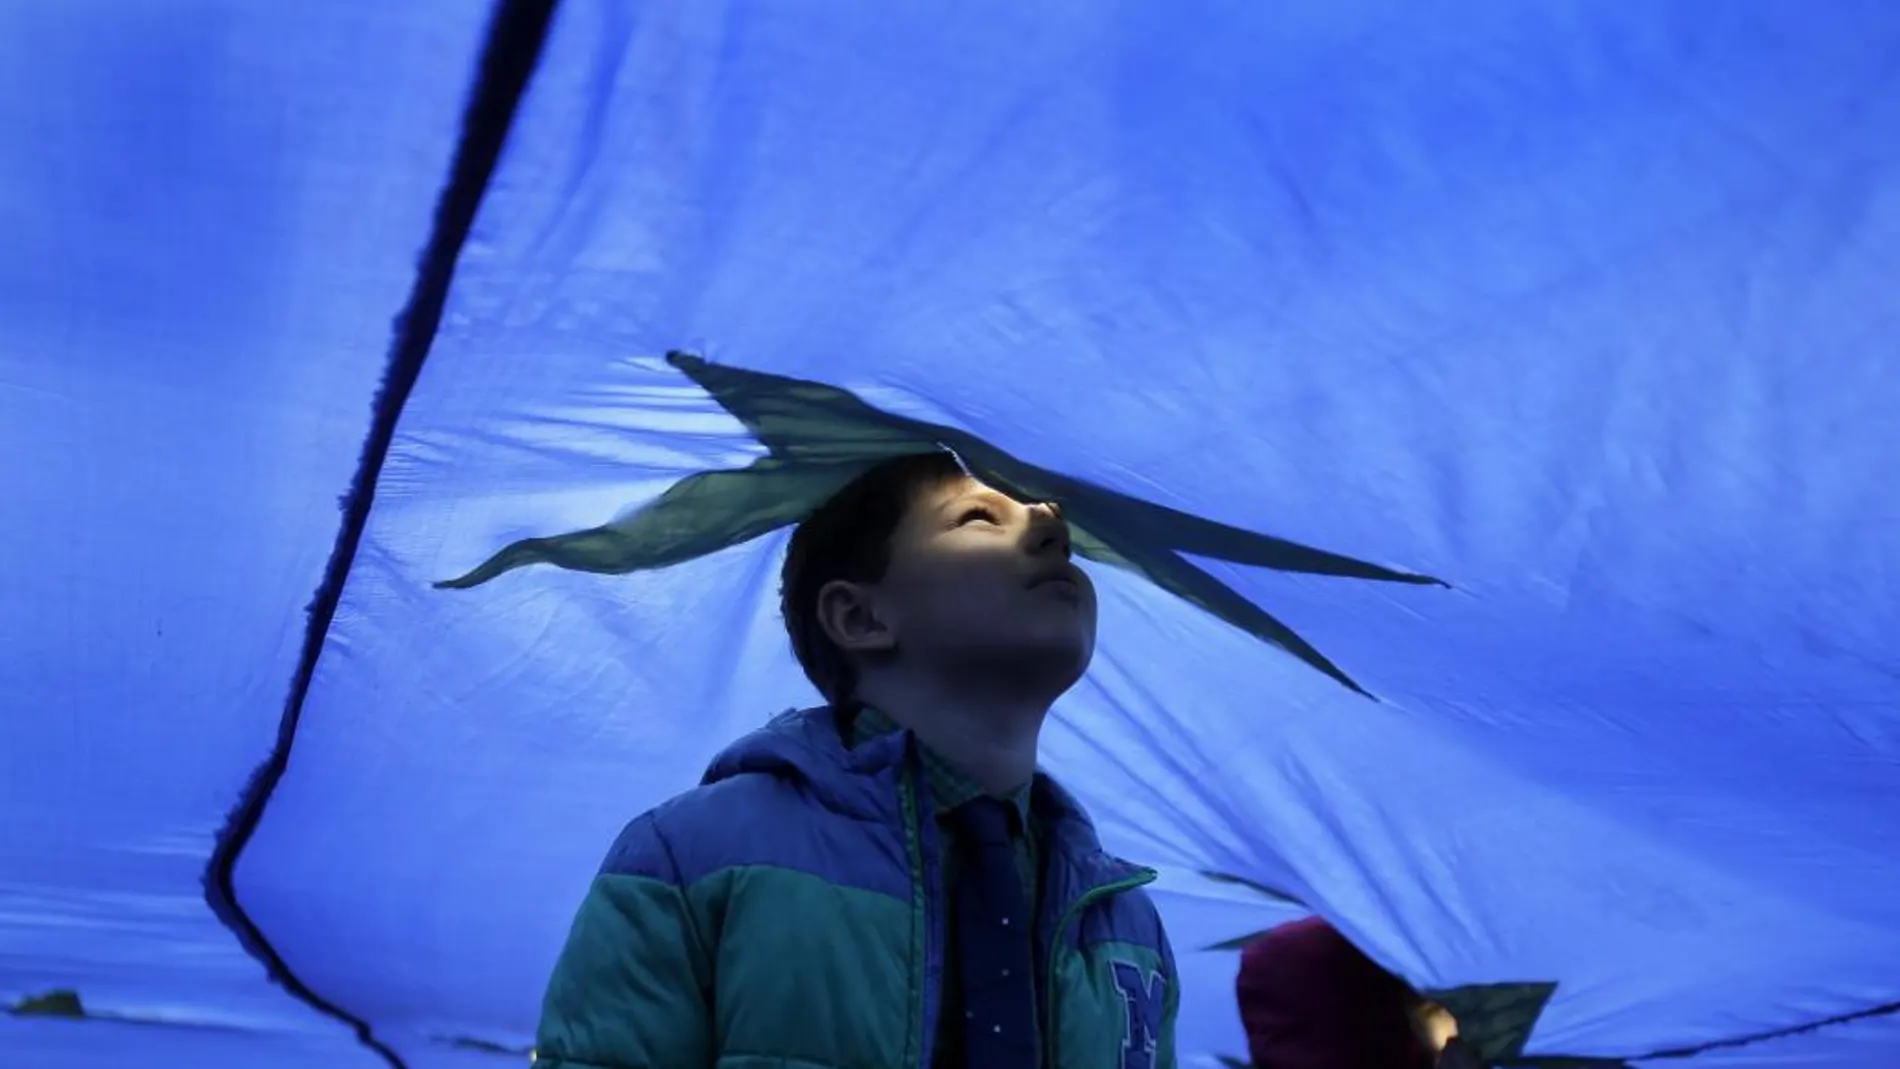 Fotografía de archivo de un niño asomado por el agujero de ventilación de una bandera gigante de la Unión Europea (UE)